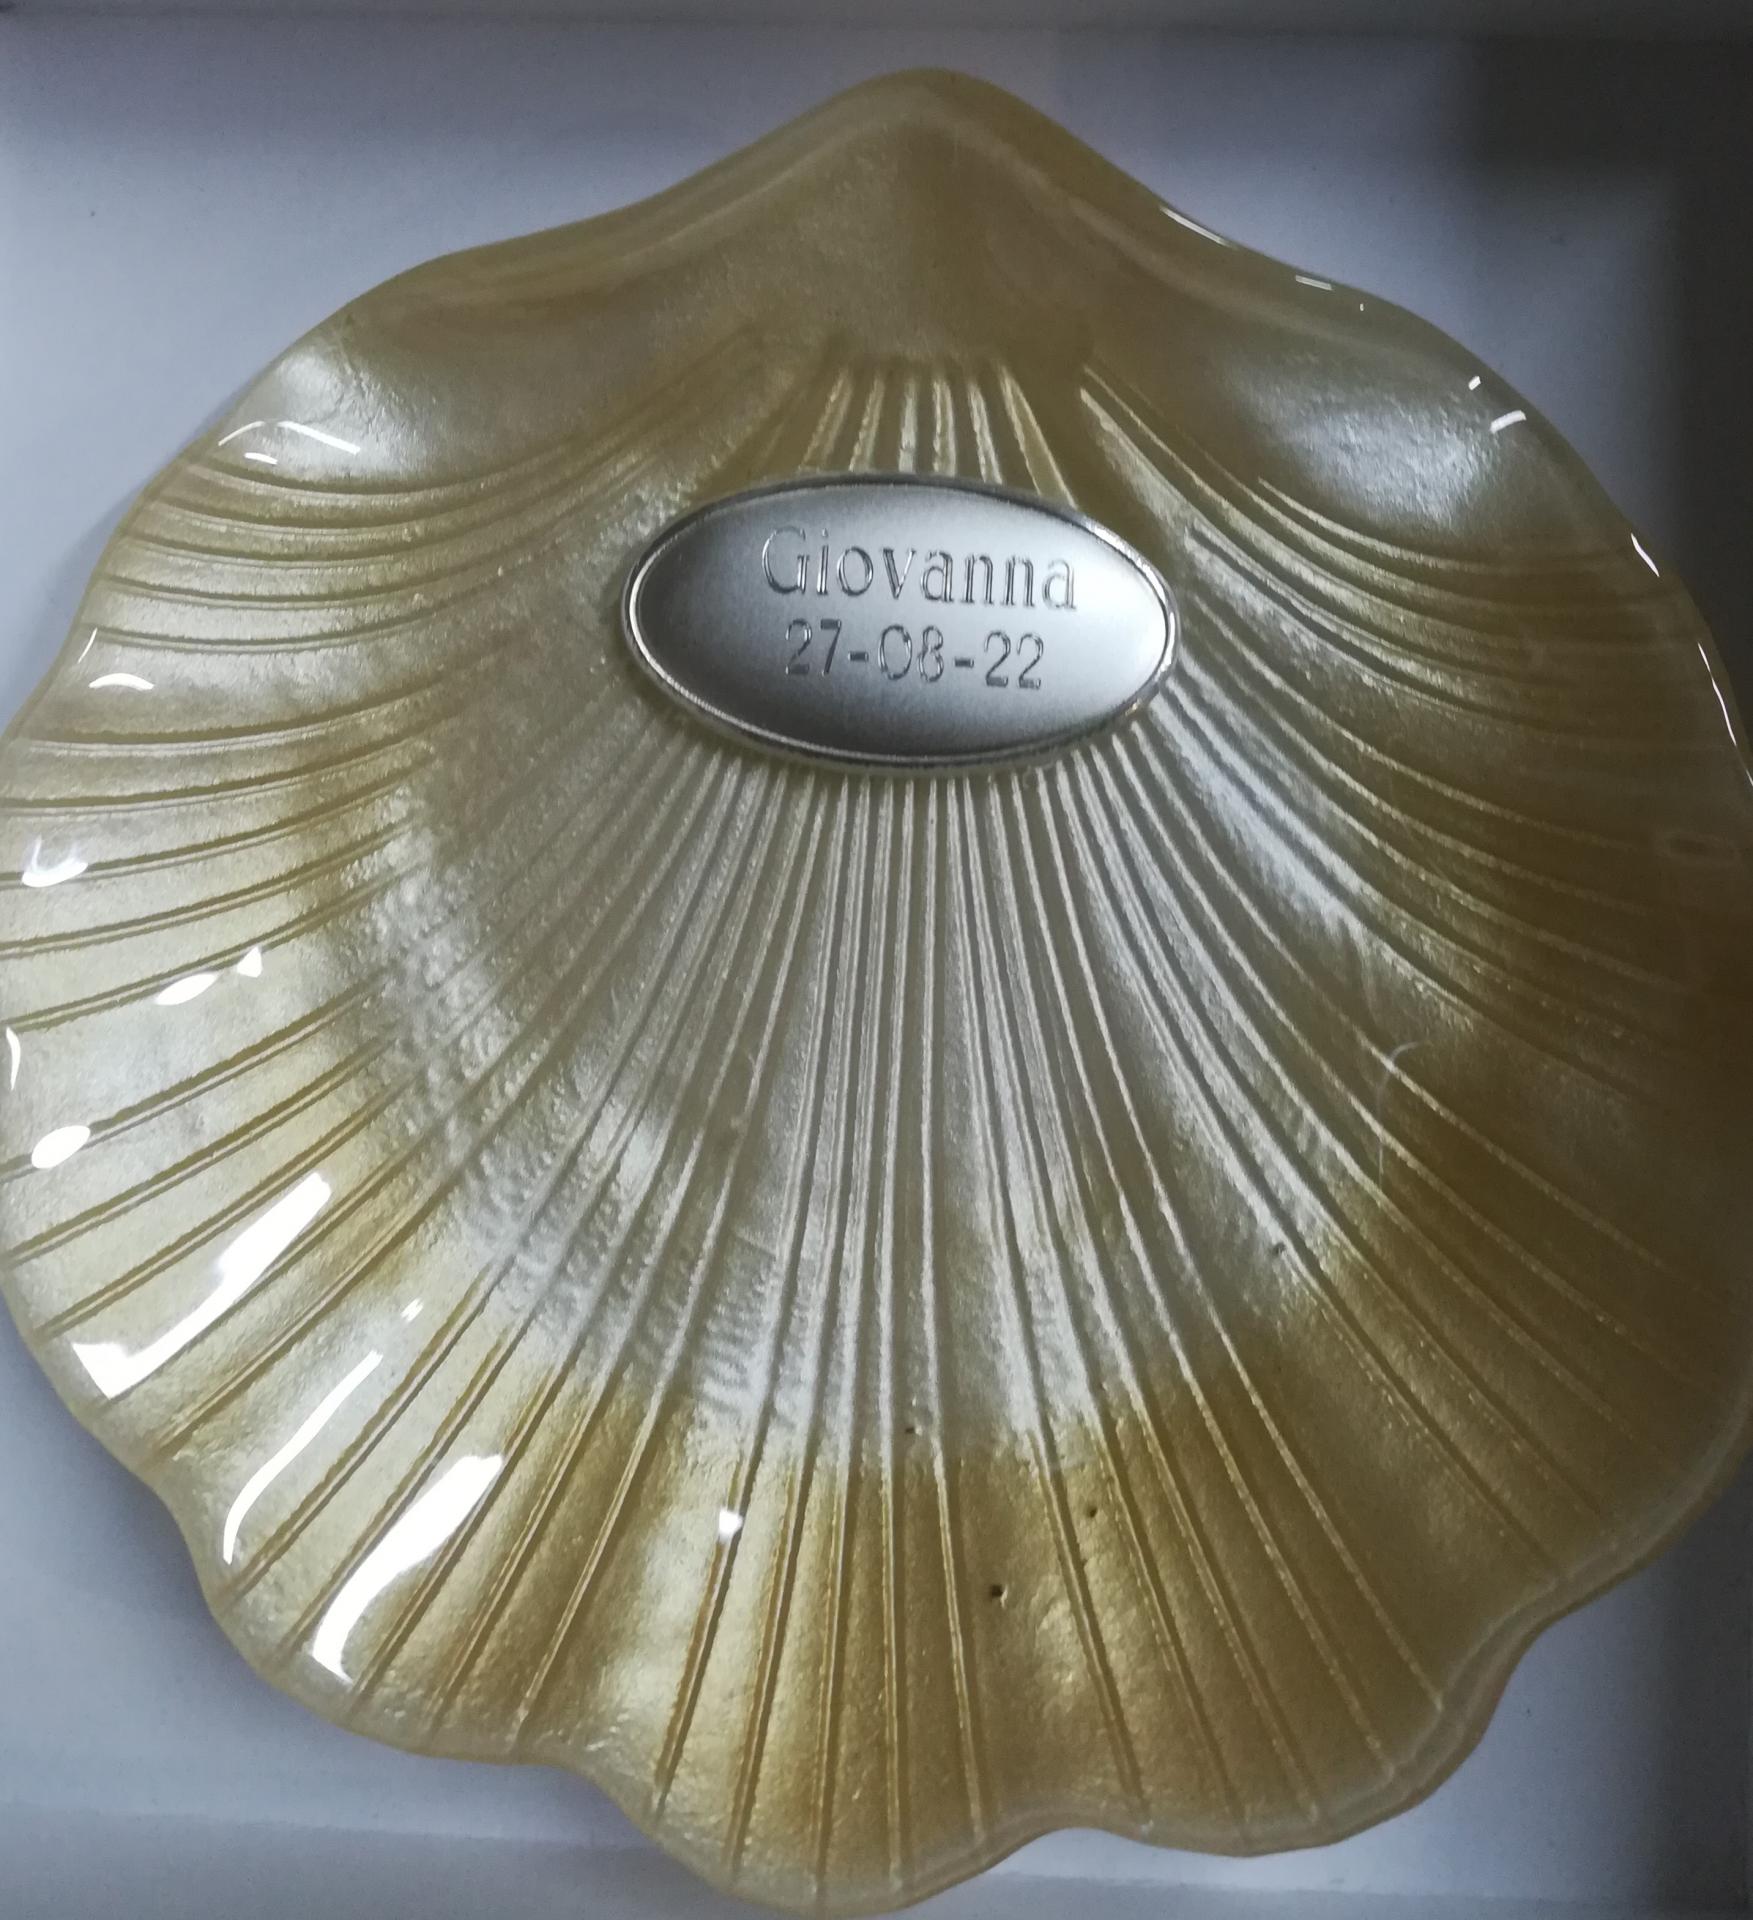 Concha Bautizo Cristal Nacar tono salmón Estuchada de 14x14 cm con ovalo  Plata Bilaminada Estuchada de Deamsa : 19.90 euros